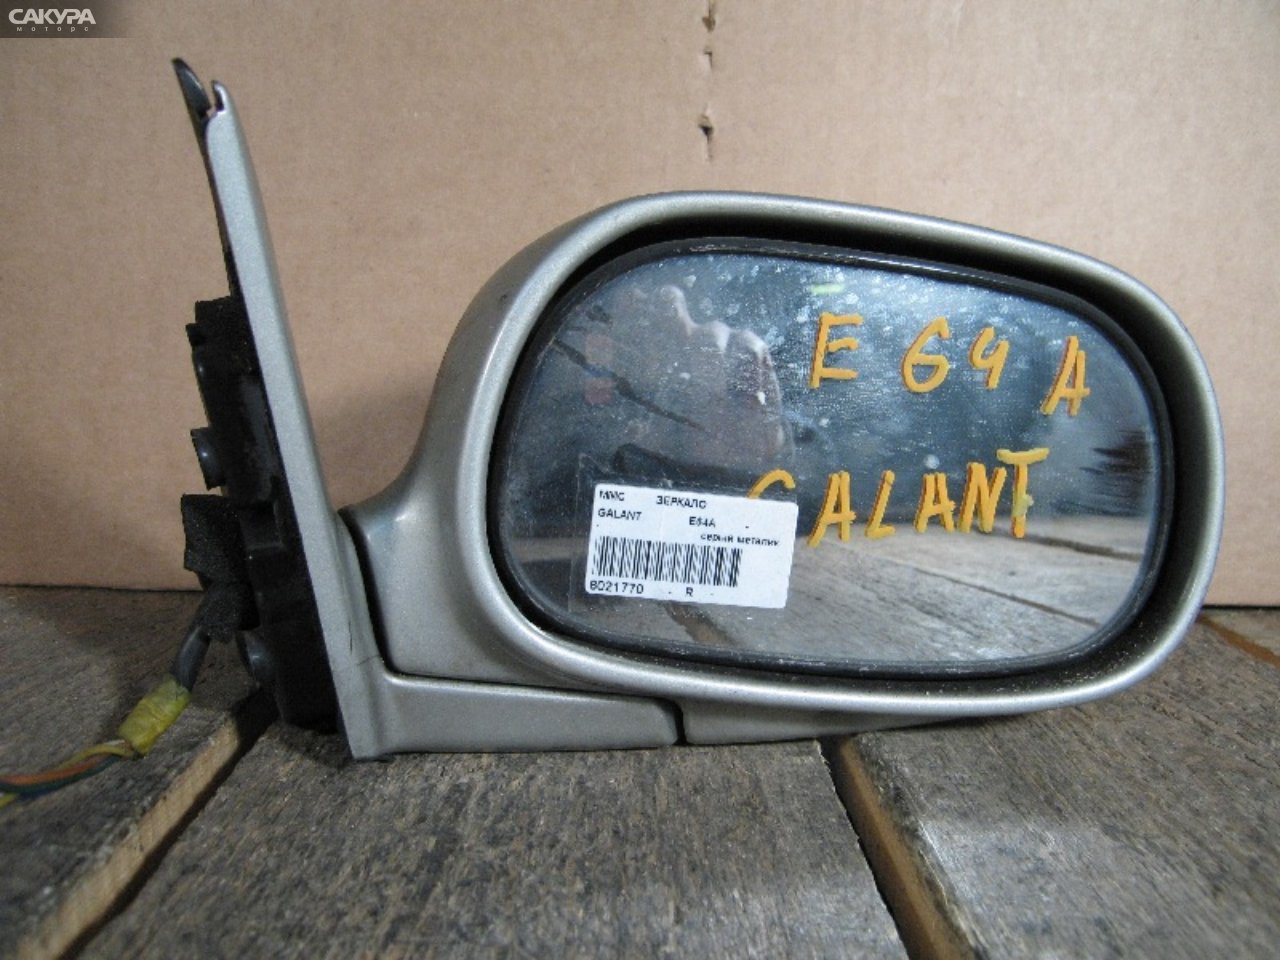 Зеркало боковое правое Mitsubishi Galant E64A: купить в Сакура Абакан.